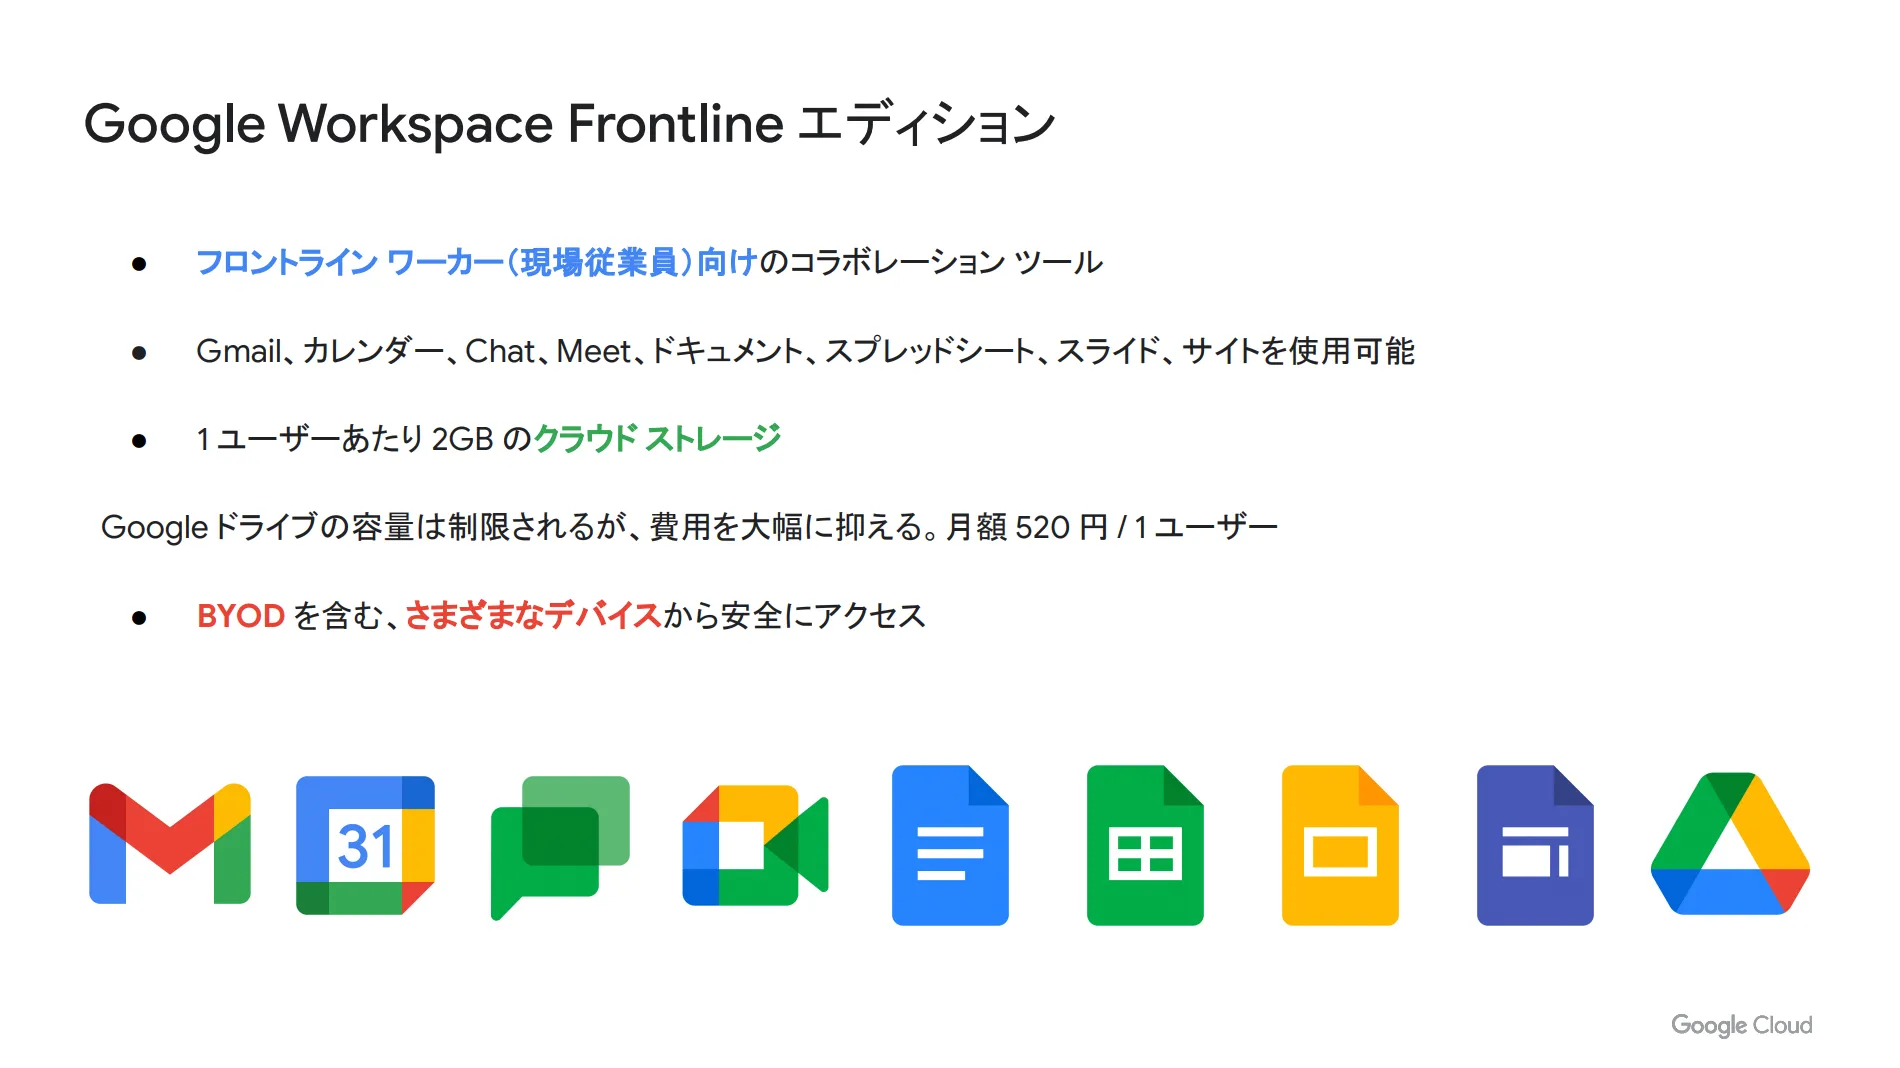 Google Workspace Frontline エディション